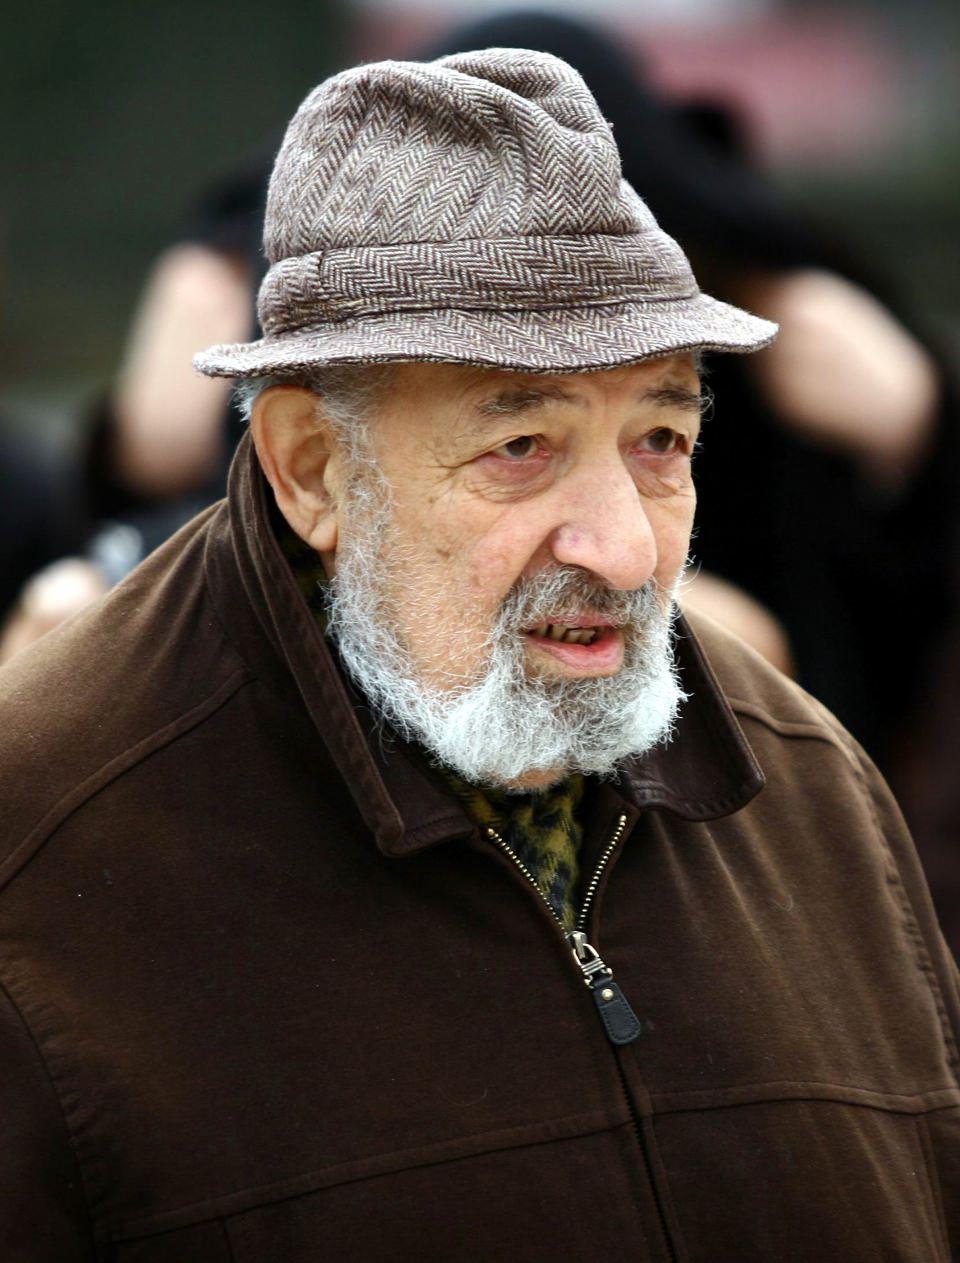 <p>Çok sayıda fotoğraf sanatçısı ve foto muhabirine ilham kaynağı olan ve 17 Ekim 2018'de 90 yaşında hayatını kaybeden Ara Güler, fotoğraflarıyla 68 yıl zamanı mühürledi.</p>

<p> </p>
